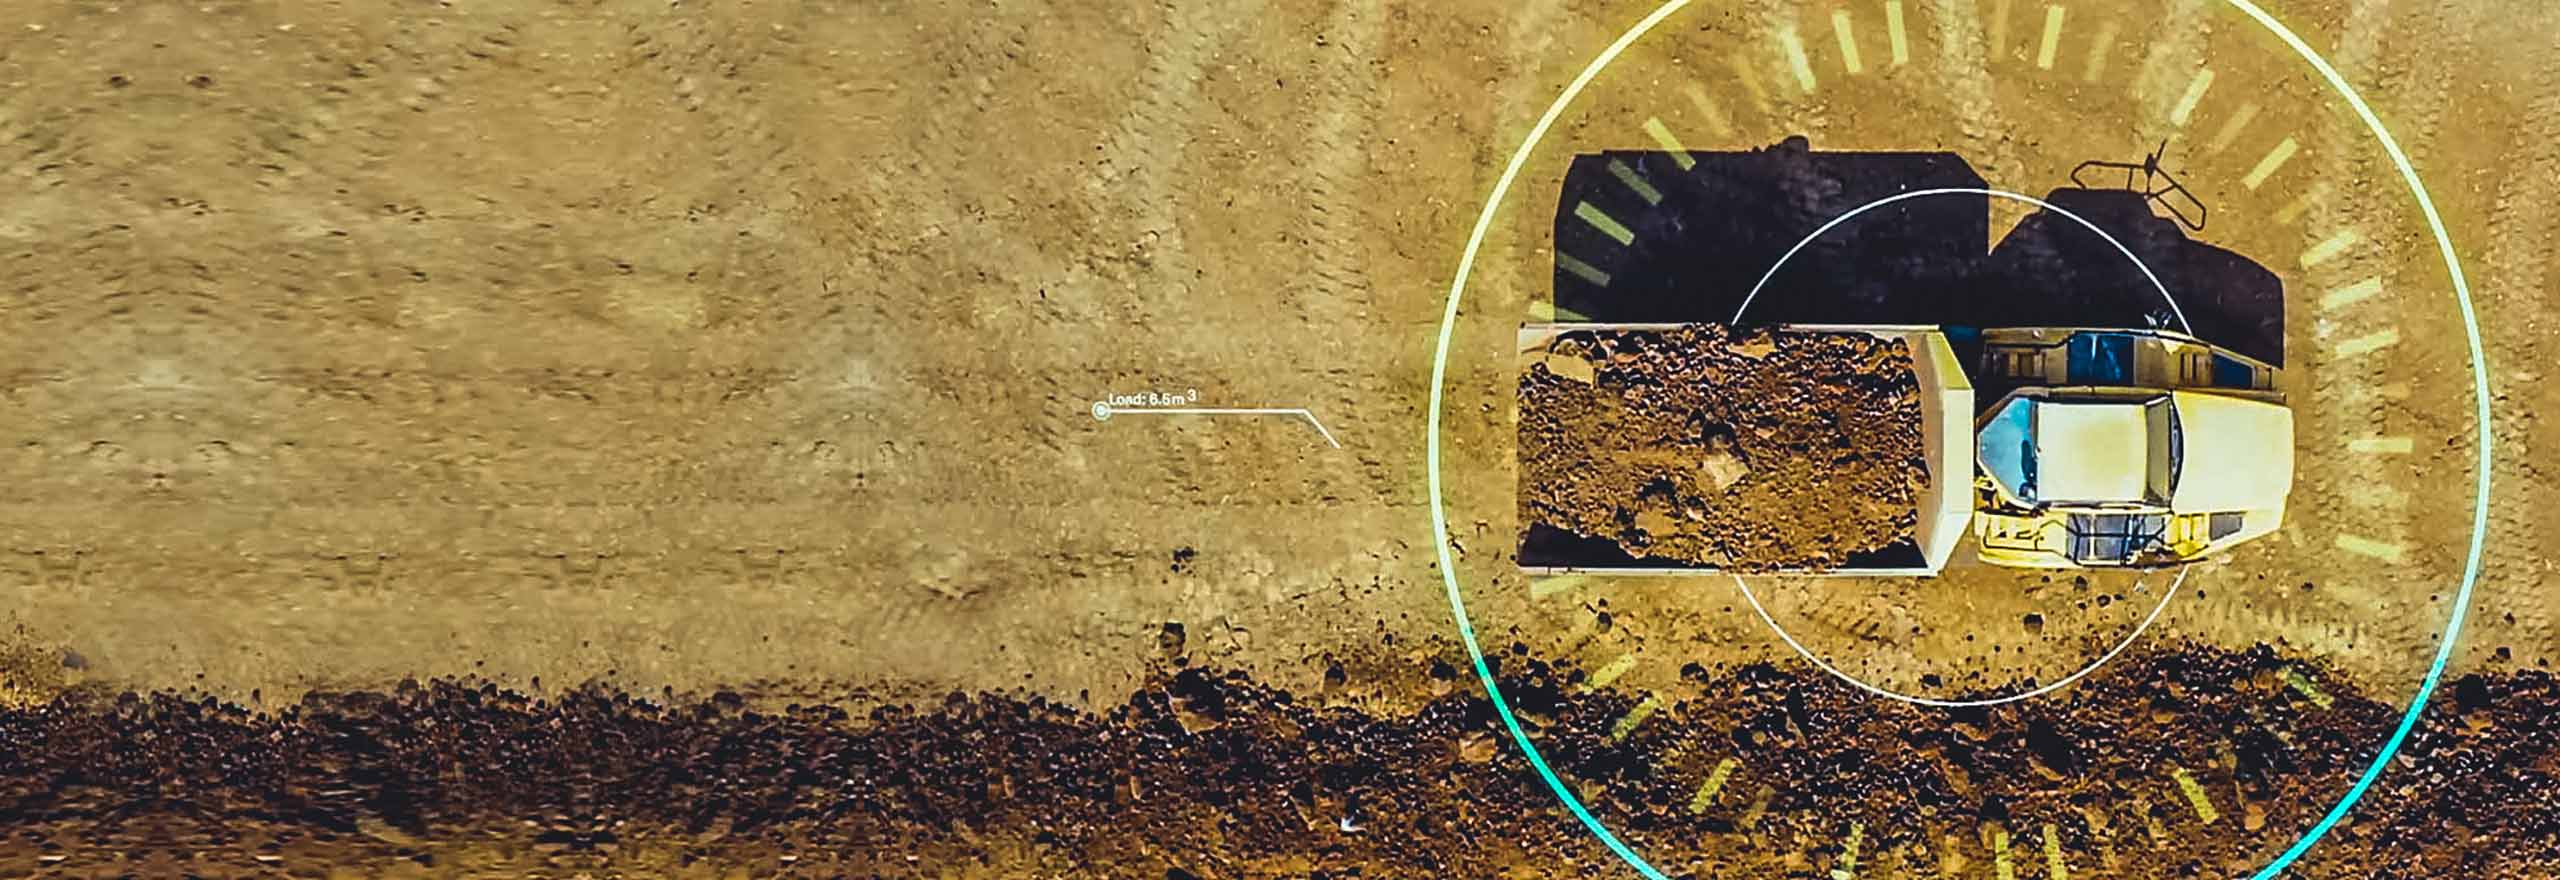 imagem aérea do veículo de mineração inteligente